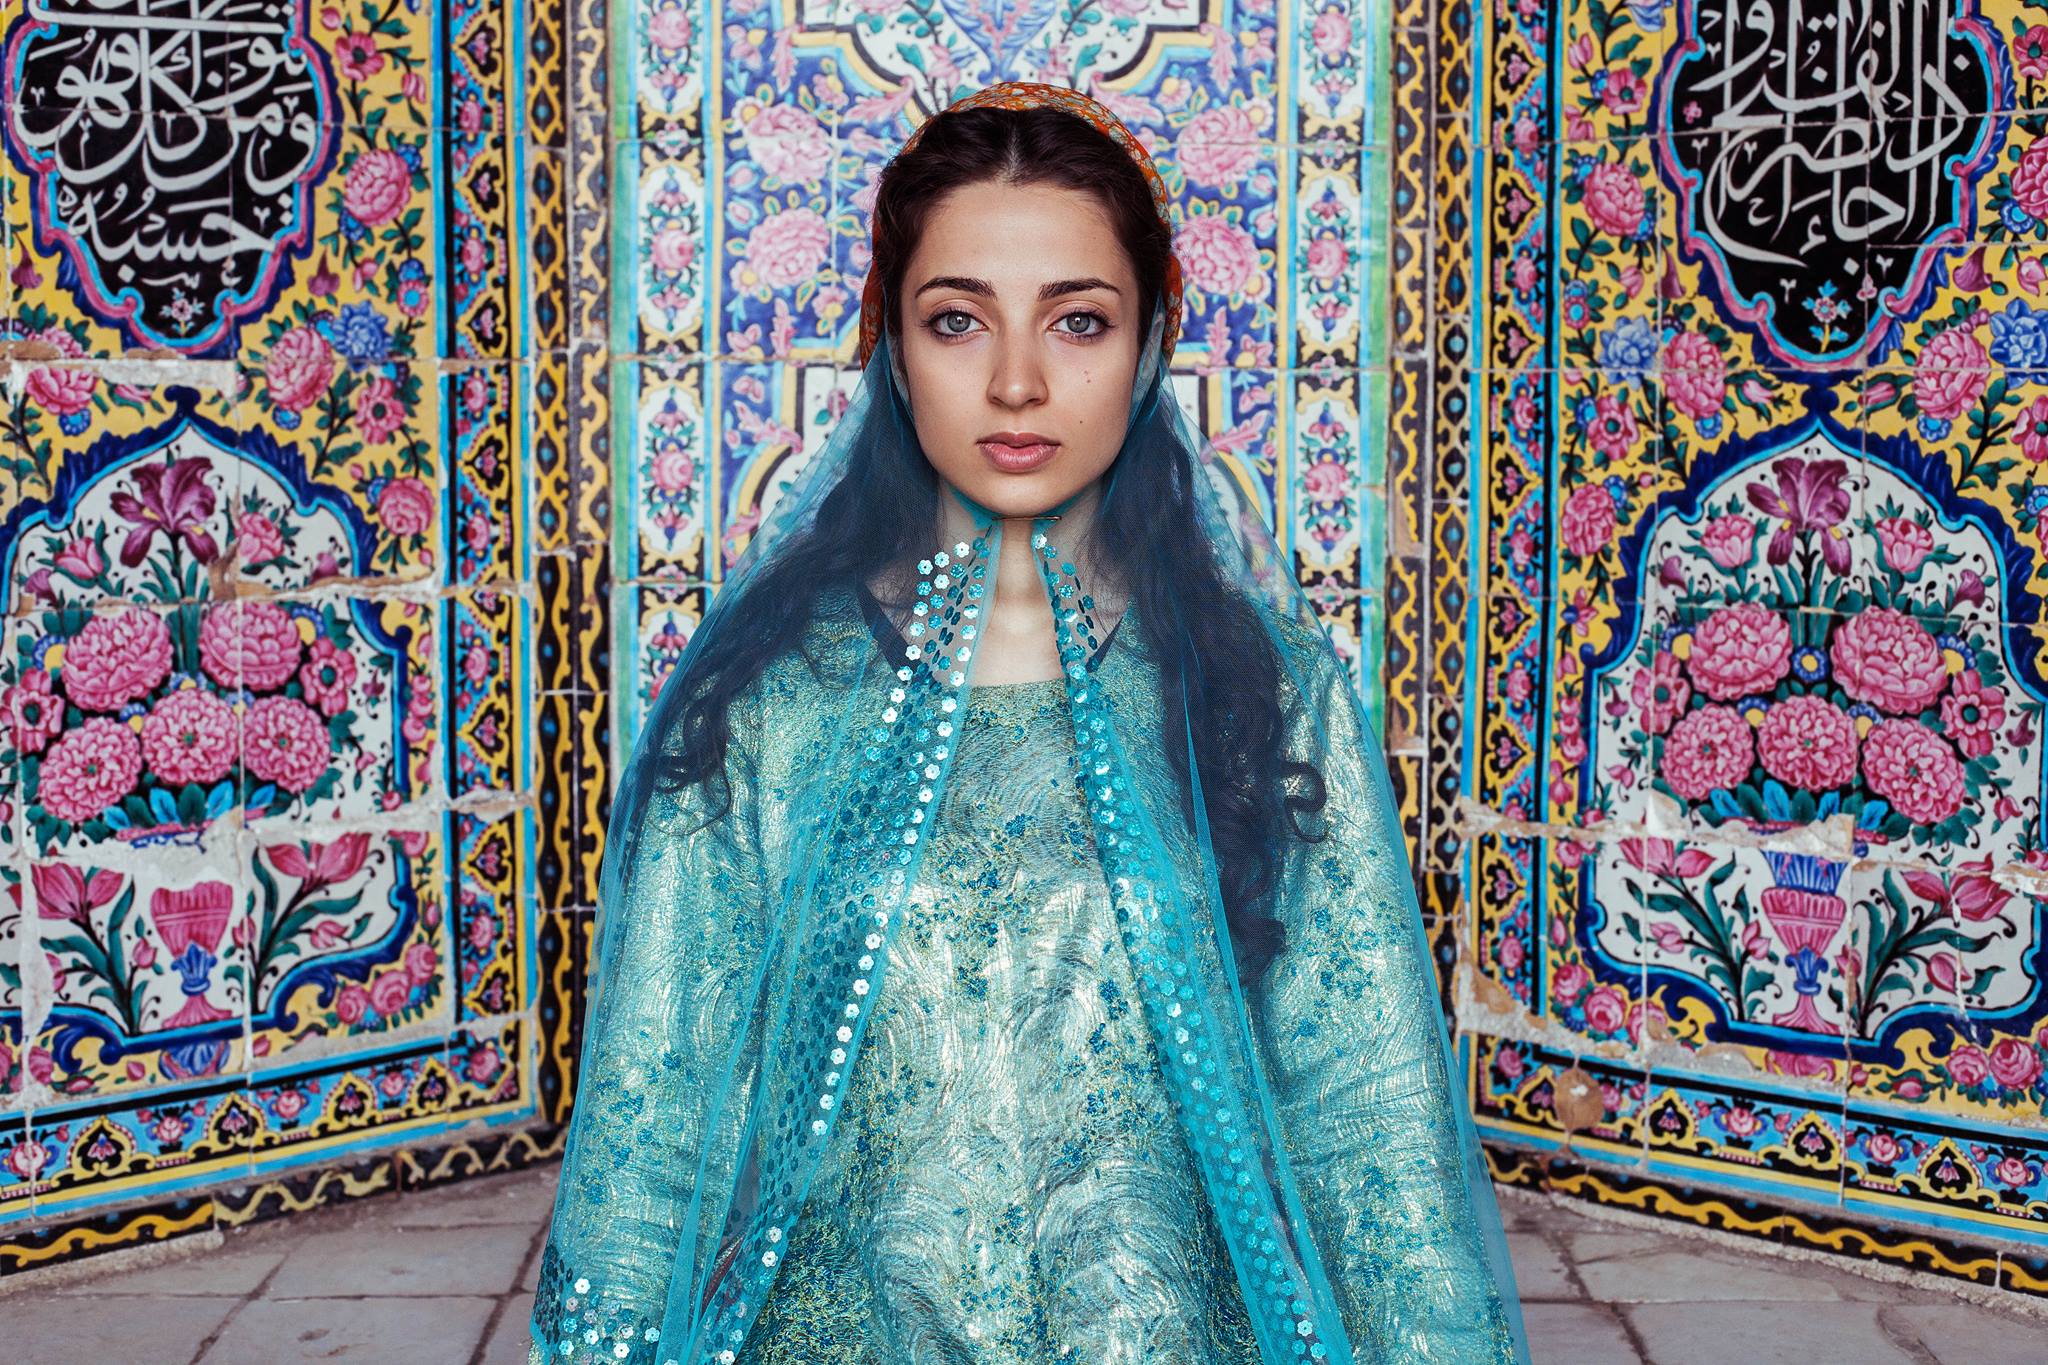 Persian Clothing  Persian dress, Persian fashion, Historical clothing